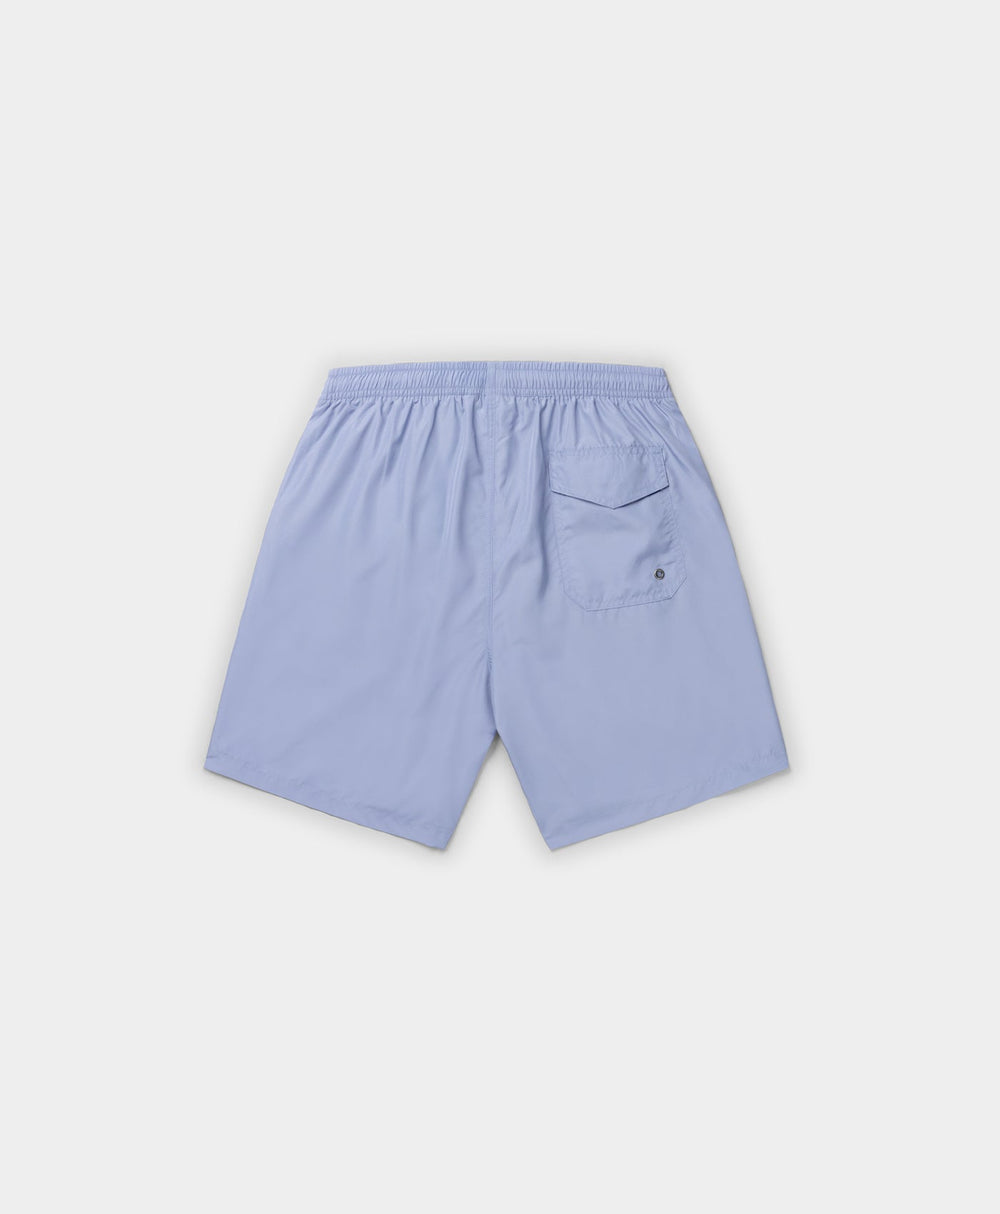 DP - Purple Impression Eswim Shorts - Packshot - Rear